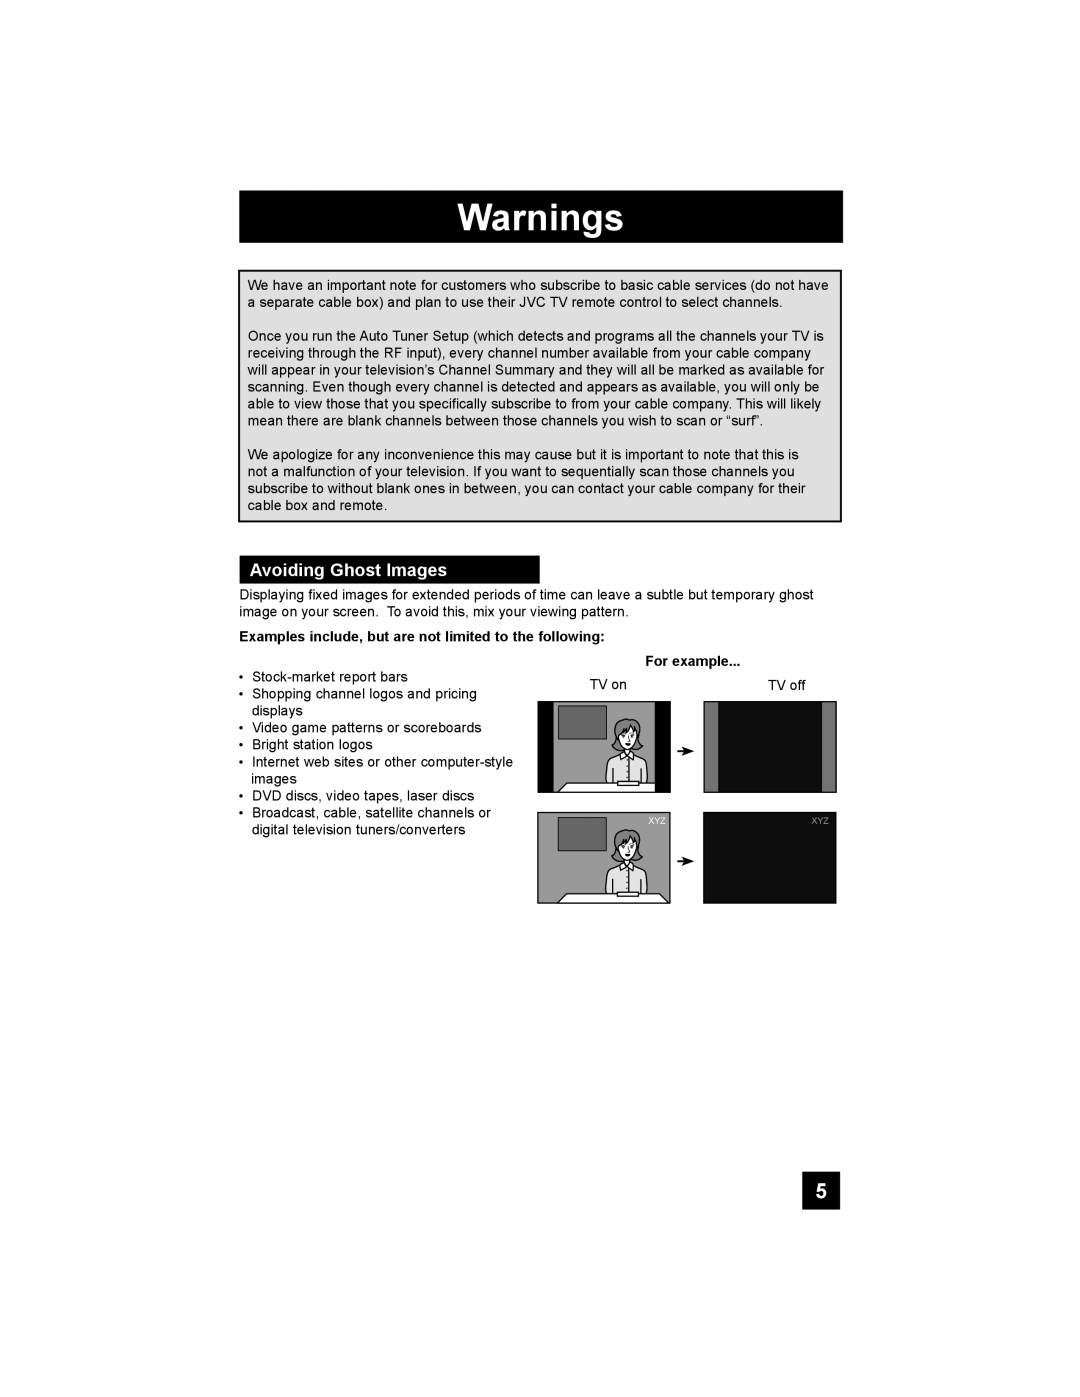 JVC LT-37X688, LT-42X688 manual Warnings, Avoiding Ghost Images 